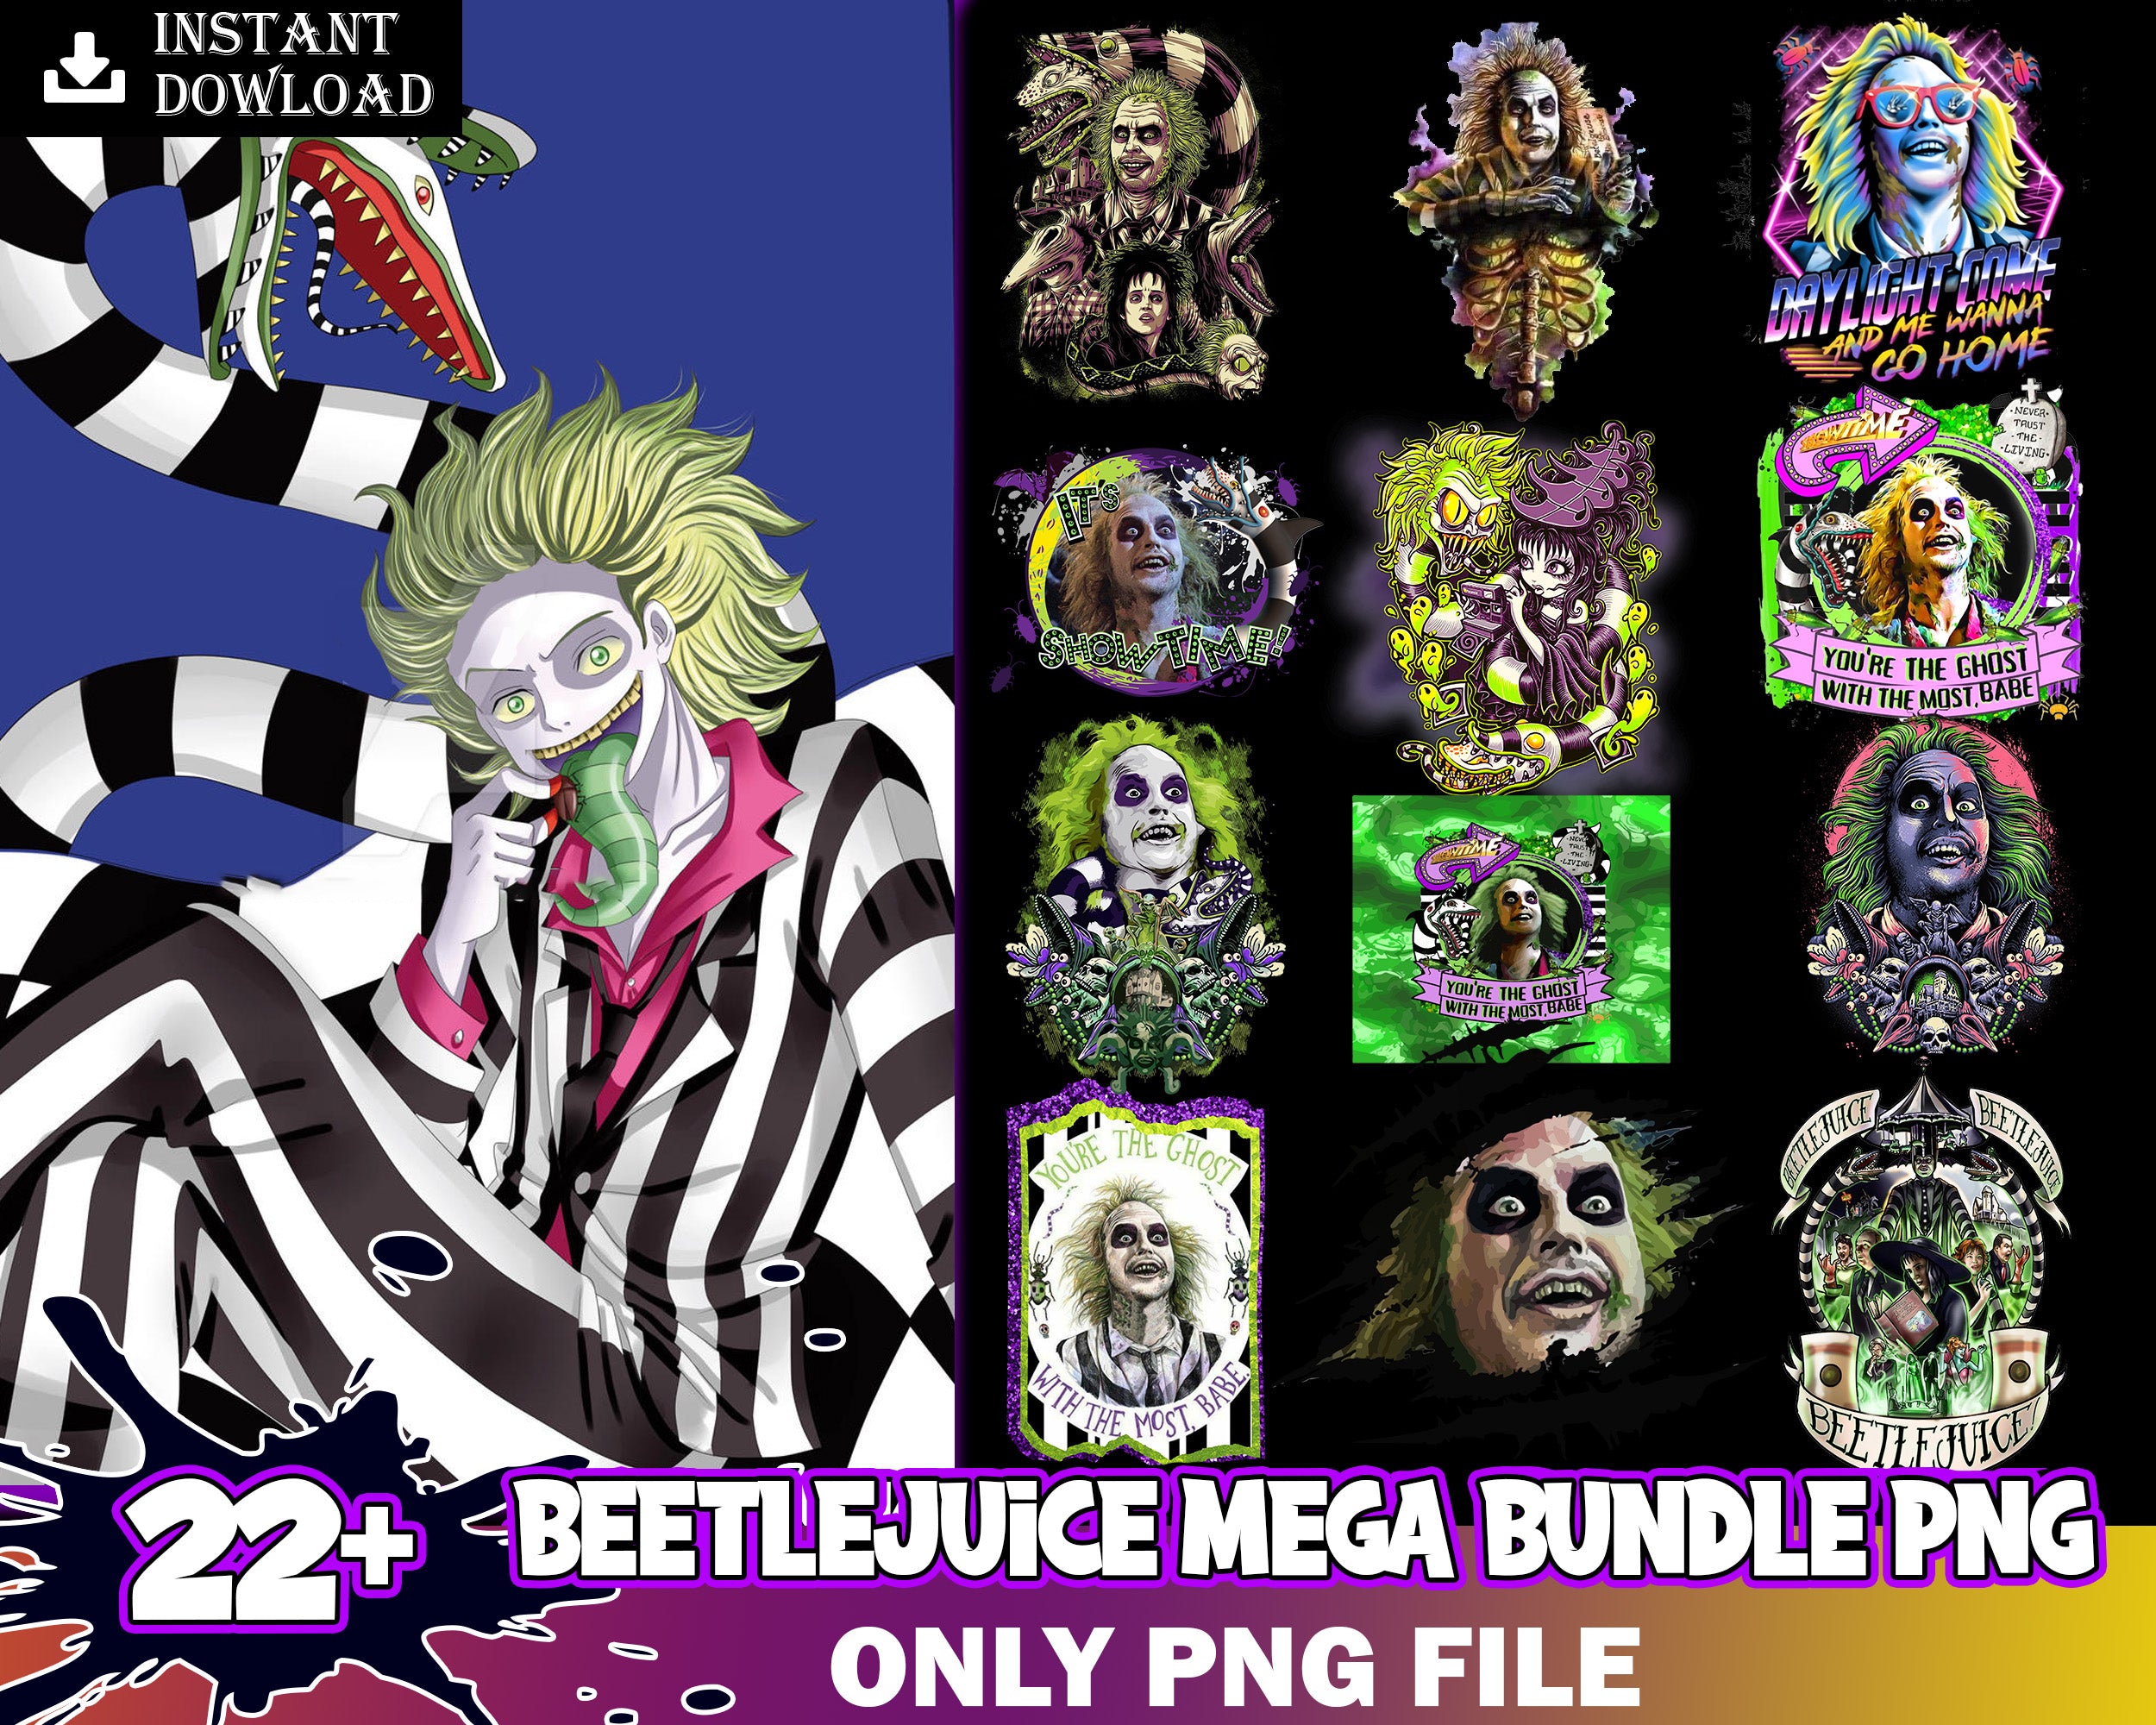 22+ Beetlejiuce bundle PNG, Halloween png images, Digital file, Digital download.